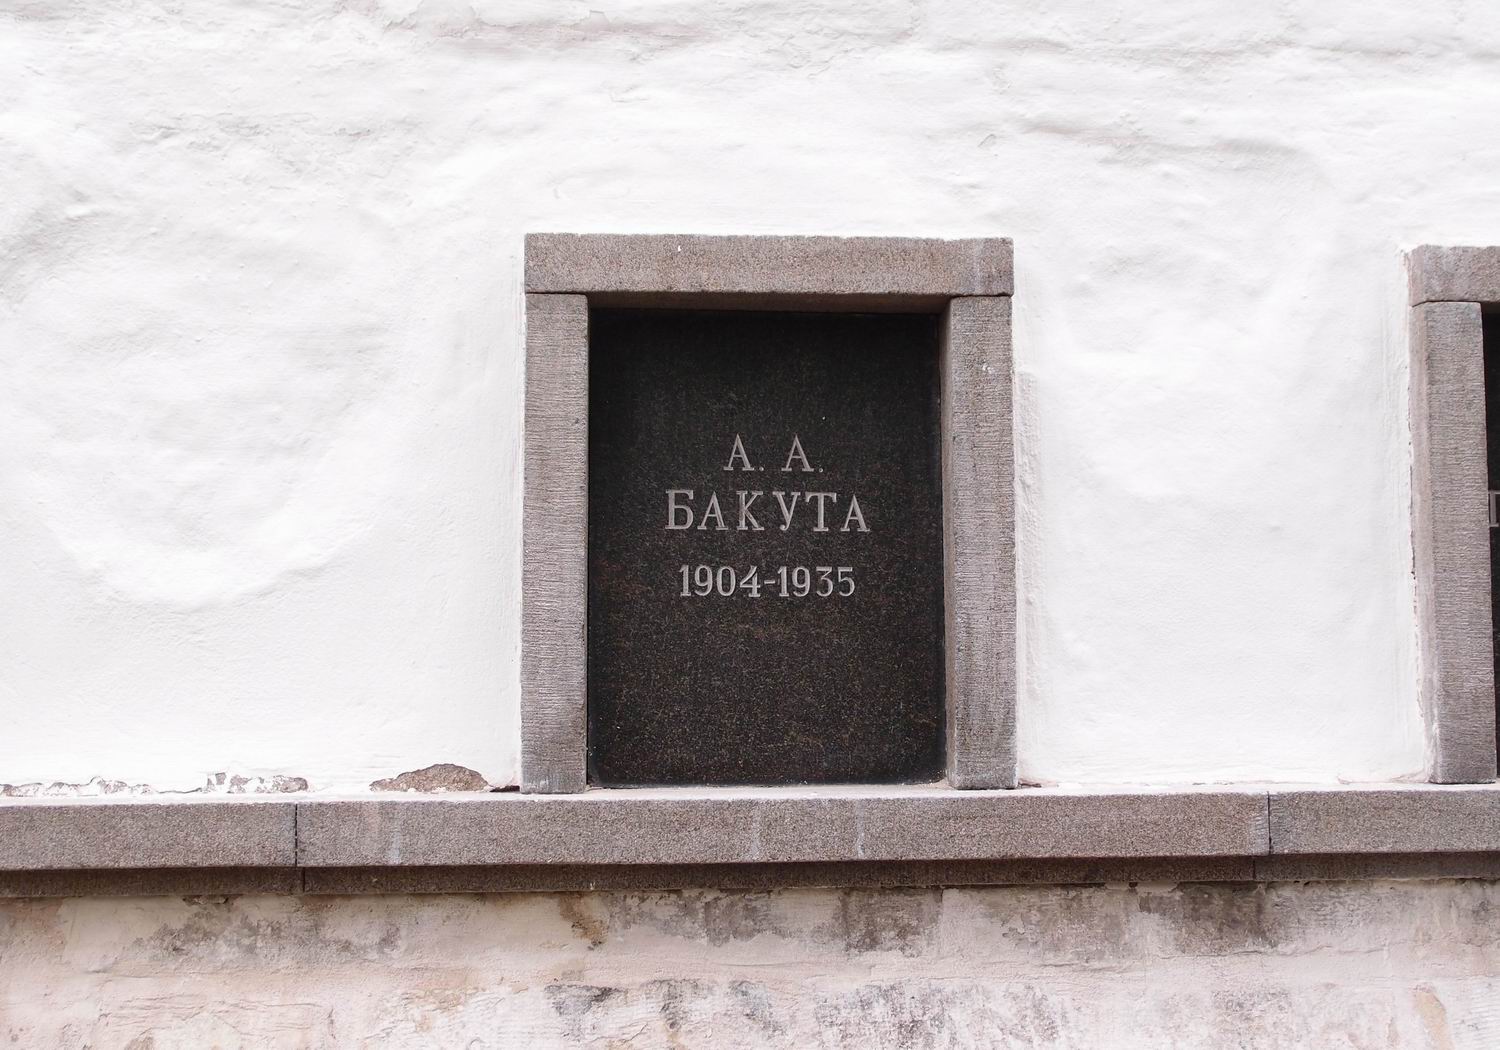 Плита на нише Бакуты А.А. (1904-1935), на Новодевичьем кладбище (колумбарий [3]-11). Нажмите левую кнопку мыши, чтобы увидеть общий вид секции.